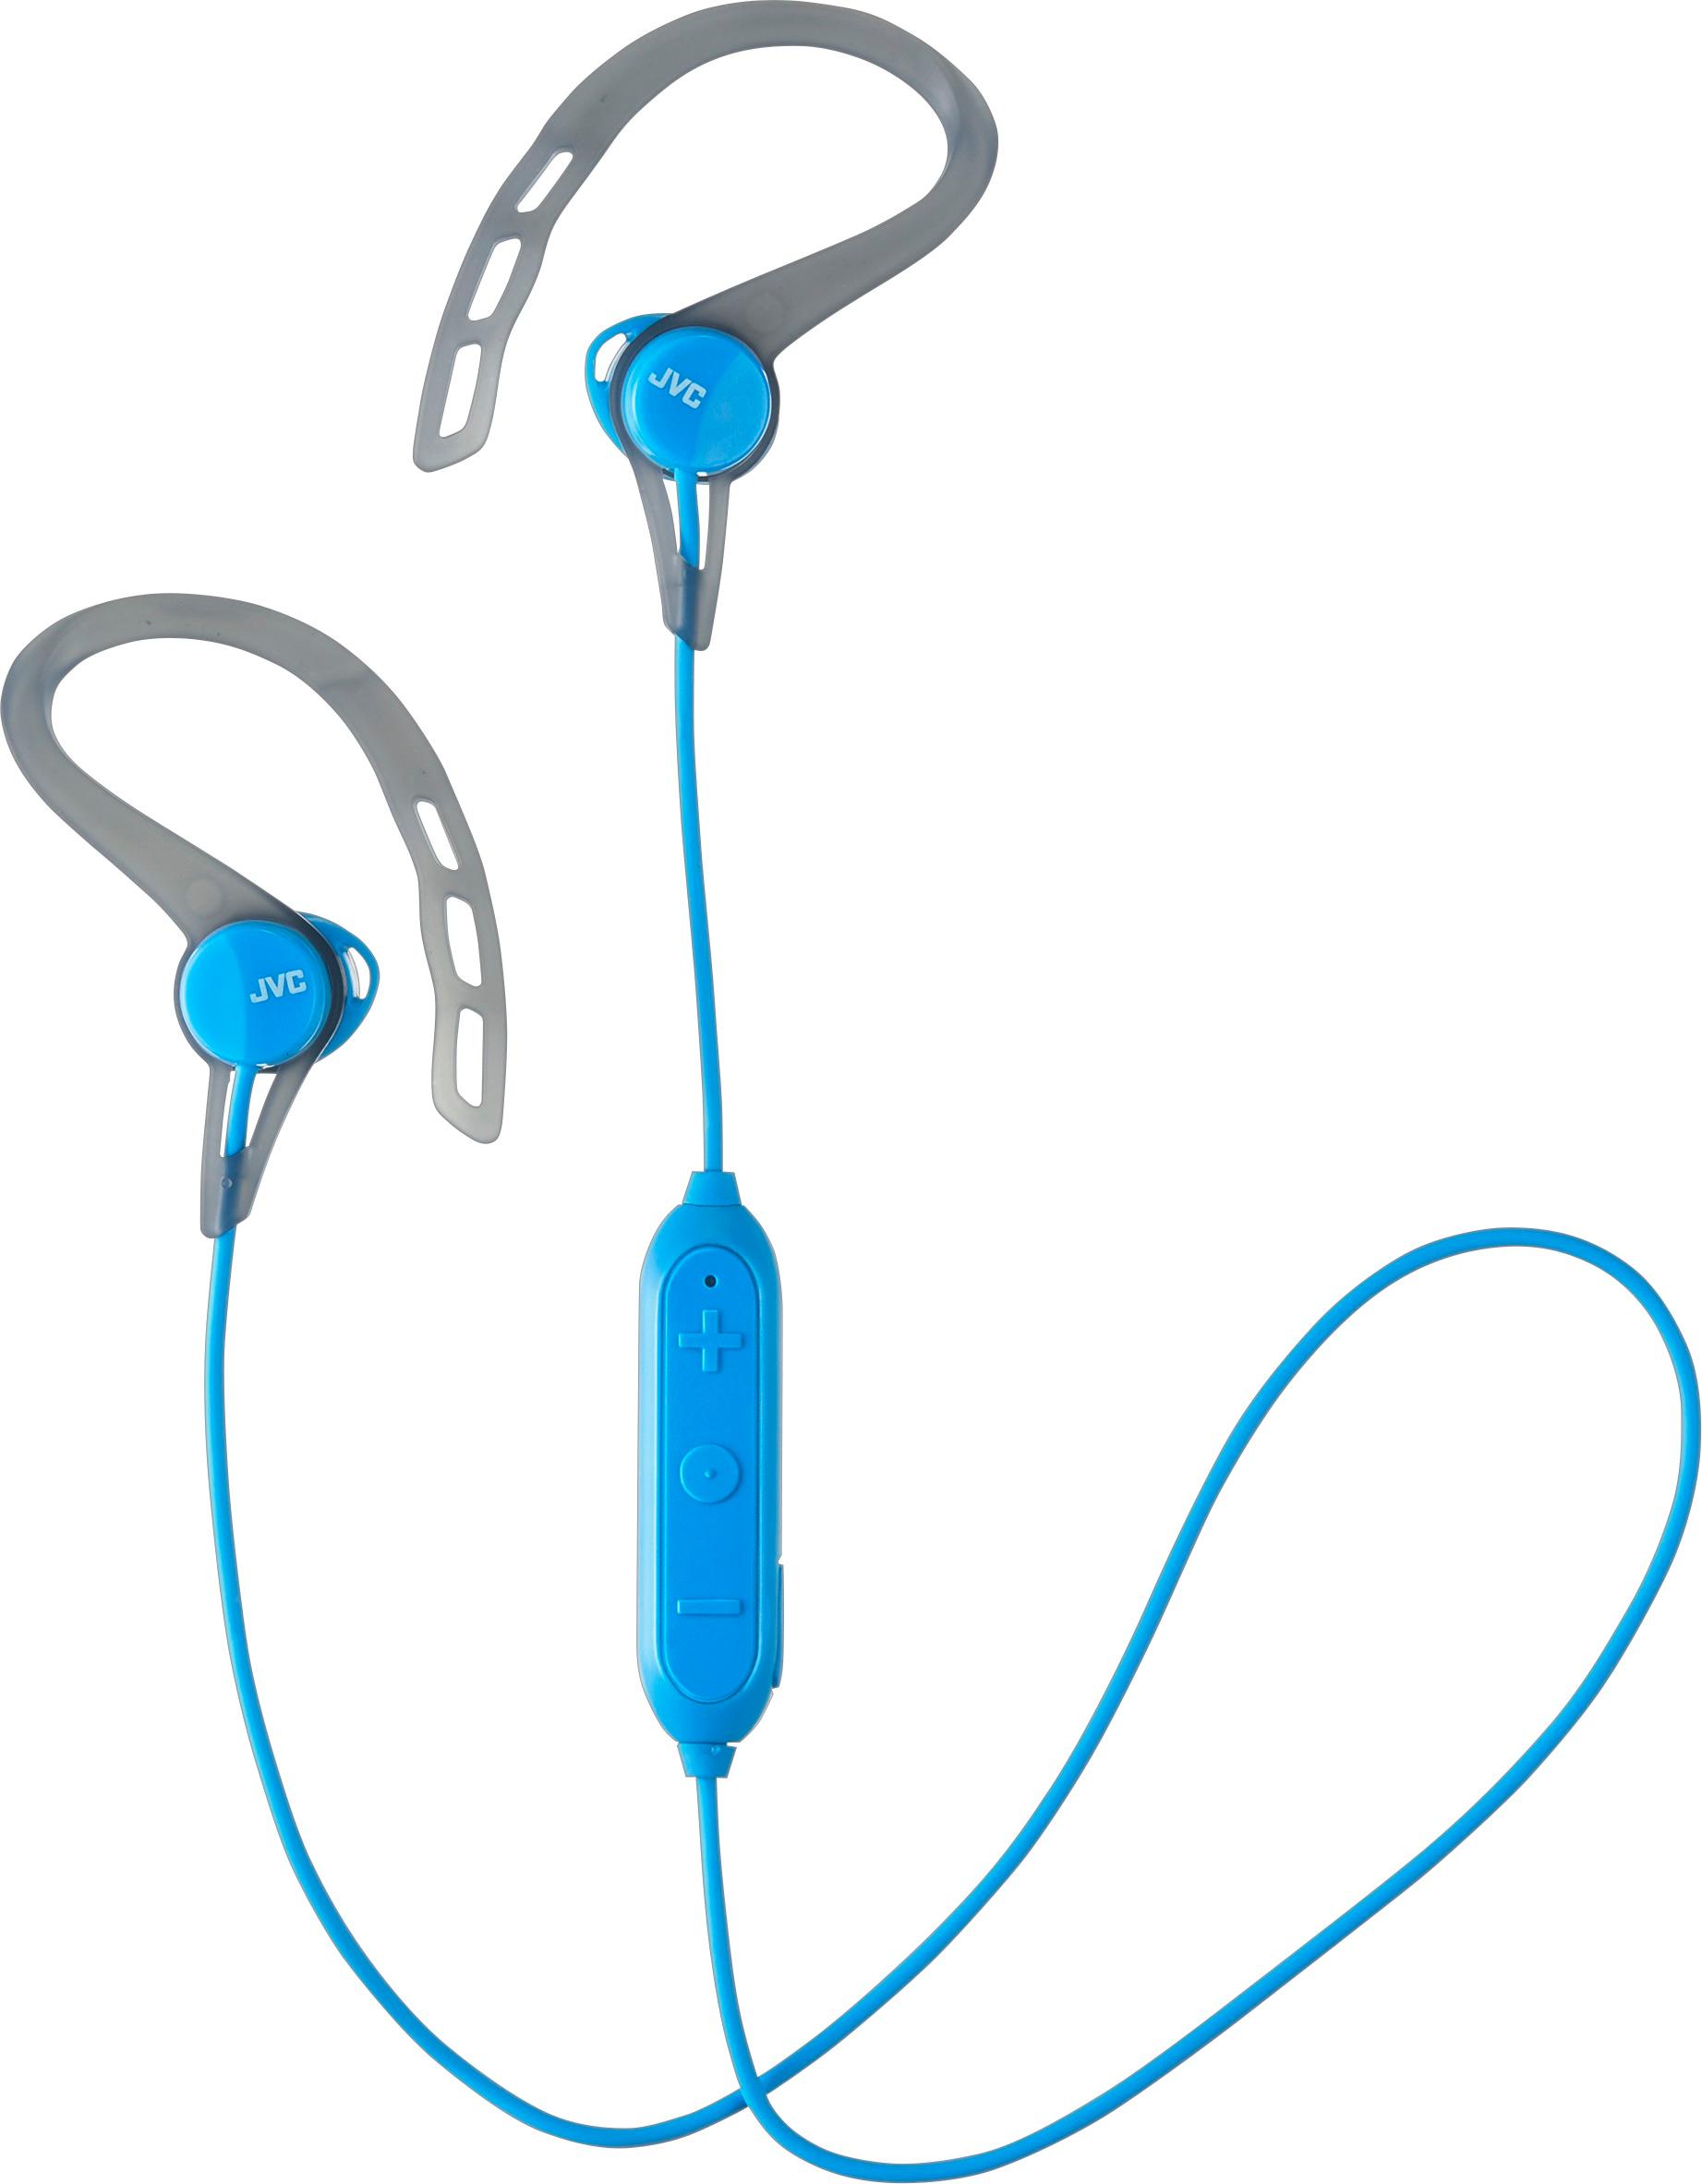 JVC - HA EC20BT Wireless In-Ear Headphones (iOS) - Blue was $39.99 now $25.99 (35.0% off)